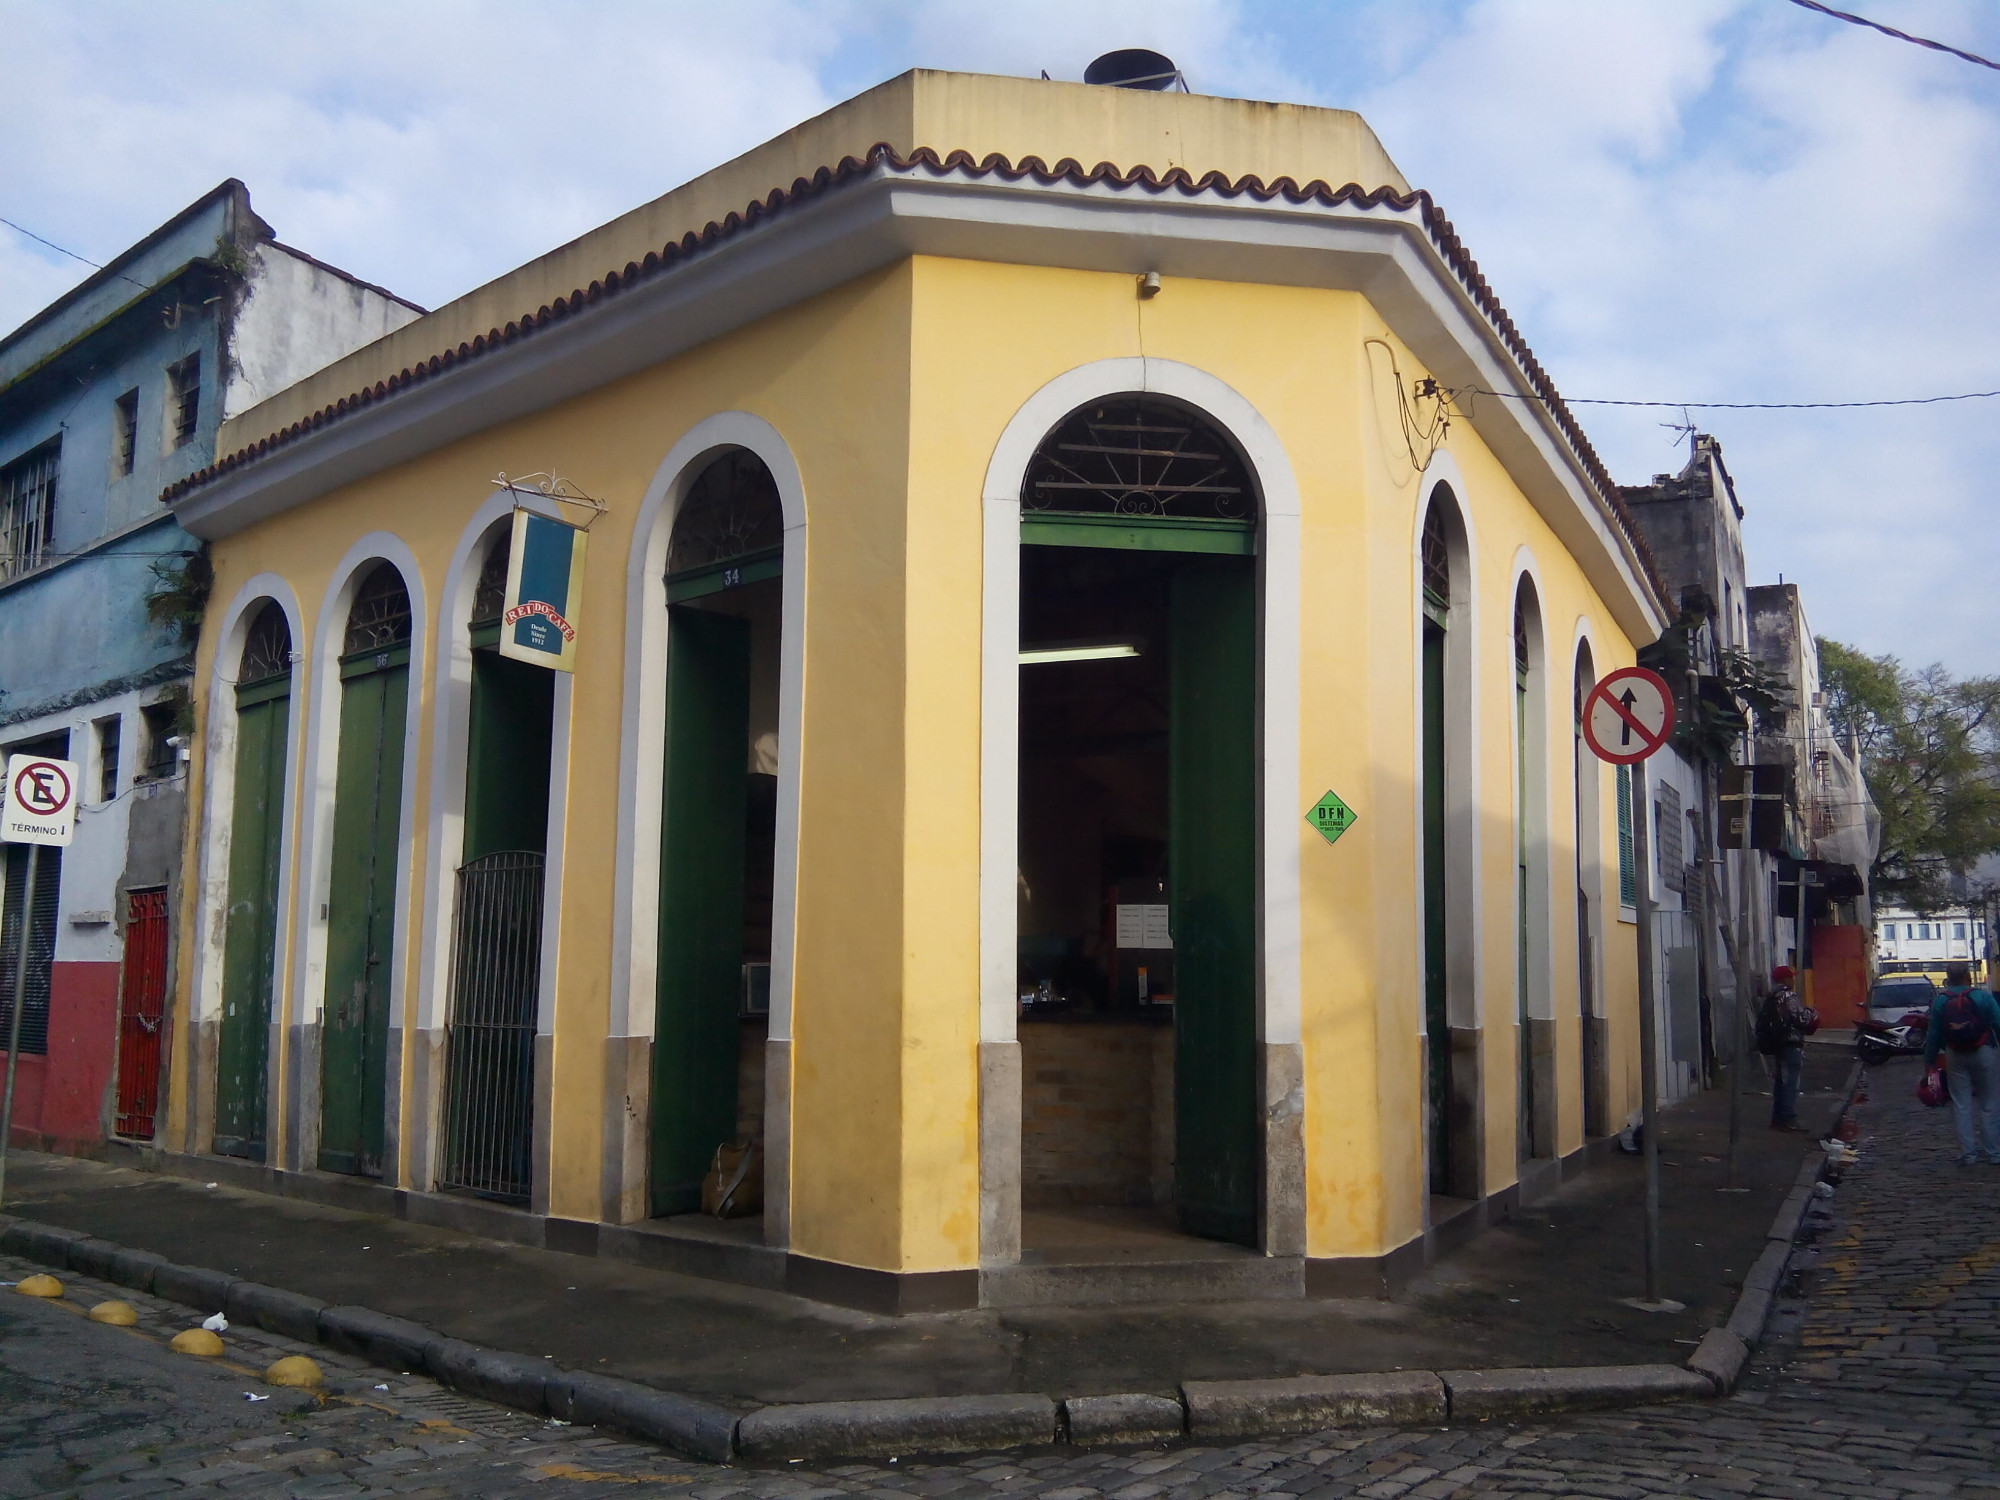 «Rei de Café» (Santos, Brazil)<br/> <br/>
One of the best place in Santos for purchase coffee<br/> <br/>
Address: <br/>
Rua Gonçalves Dias, 34/36 — Centro, Santos — SP, 11010-160<br/>
